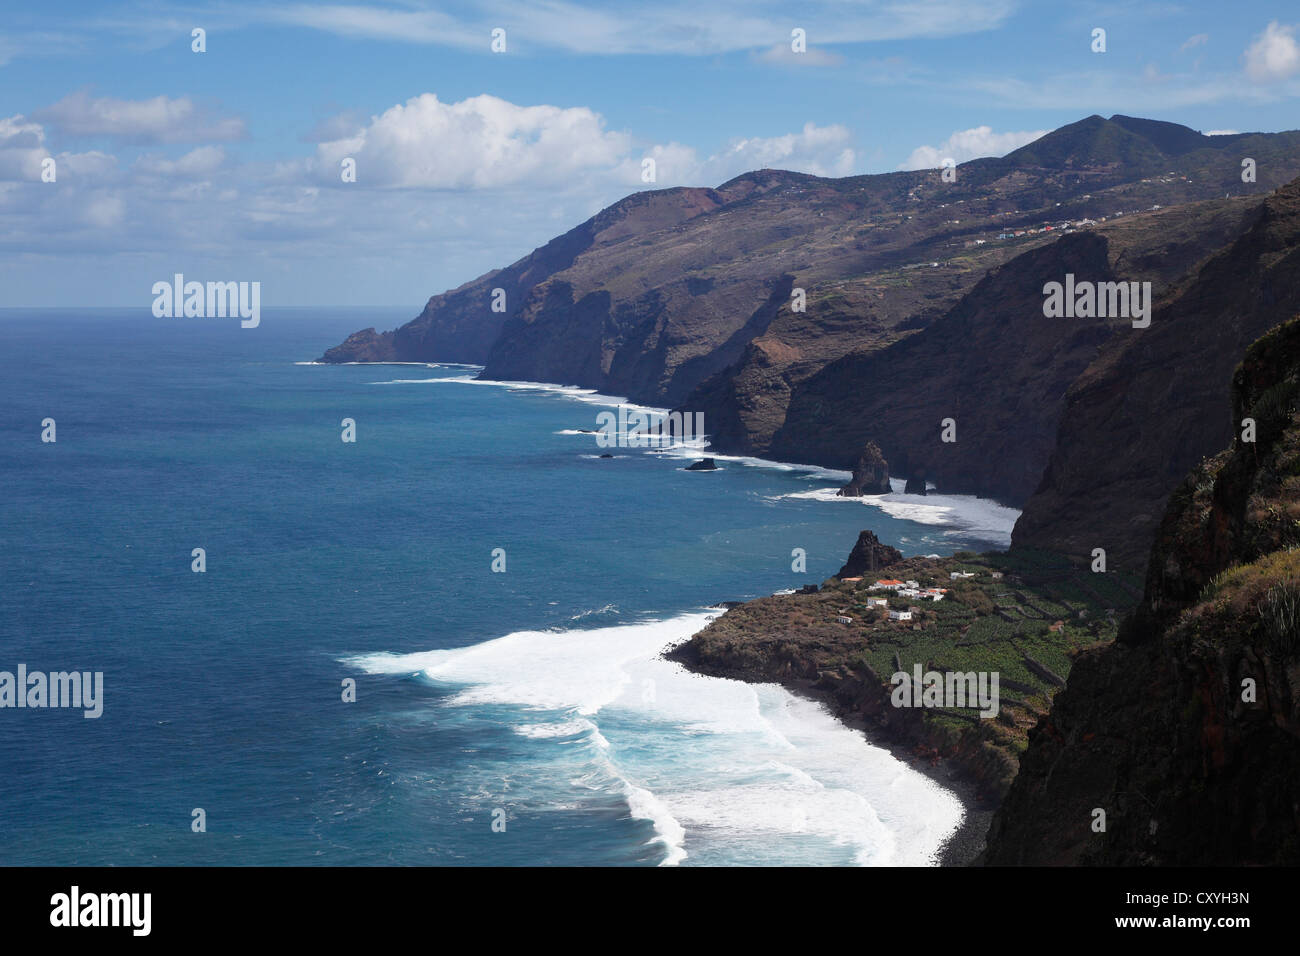 Costa norte con Fajana, vista desde el tablado, La Palma, Islas Canarias, España, Europa Foto de stock